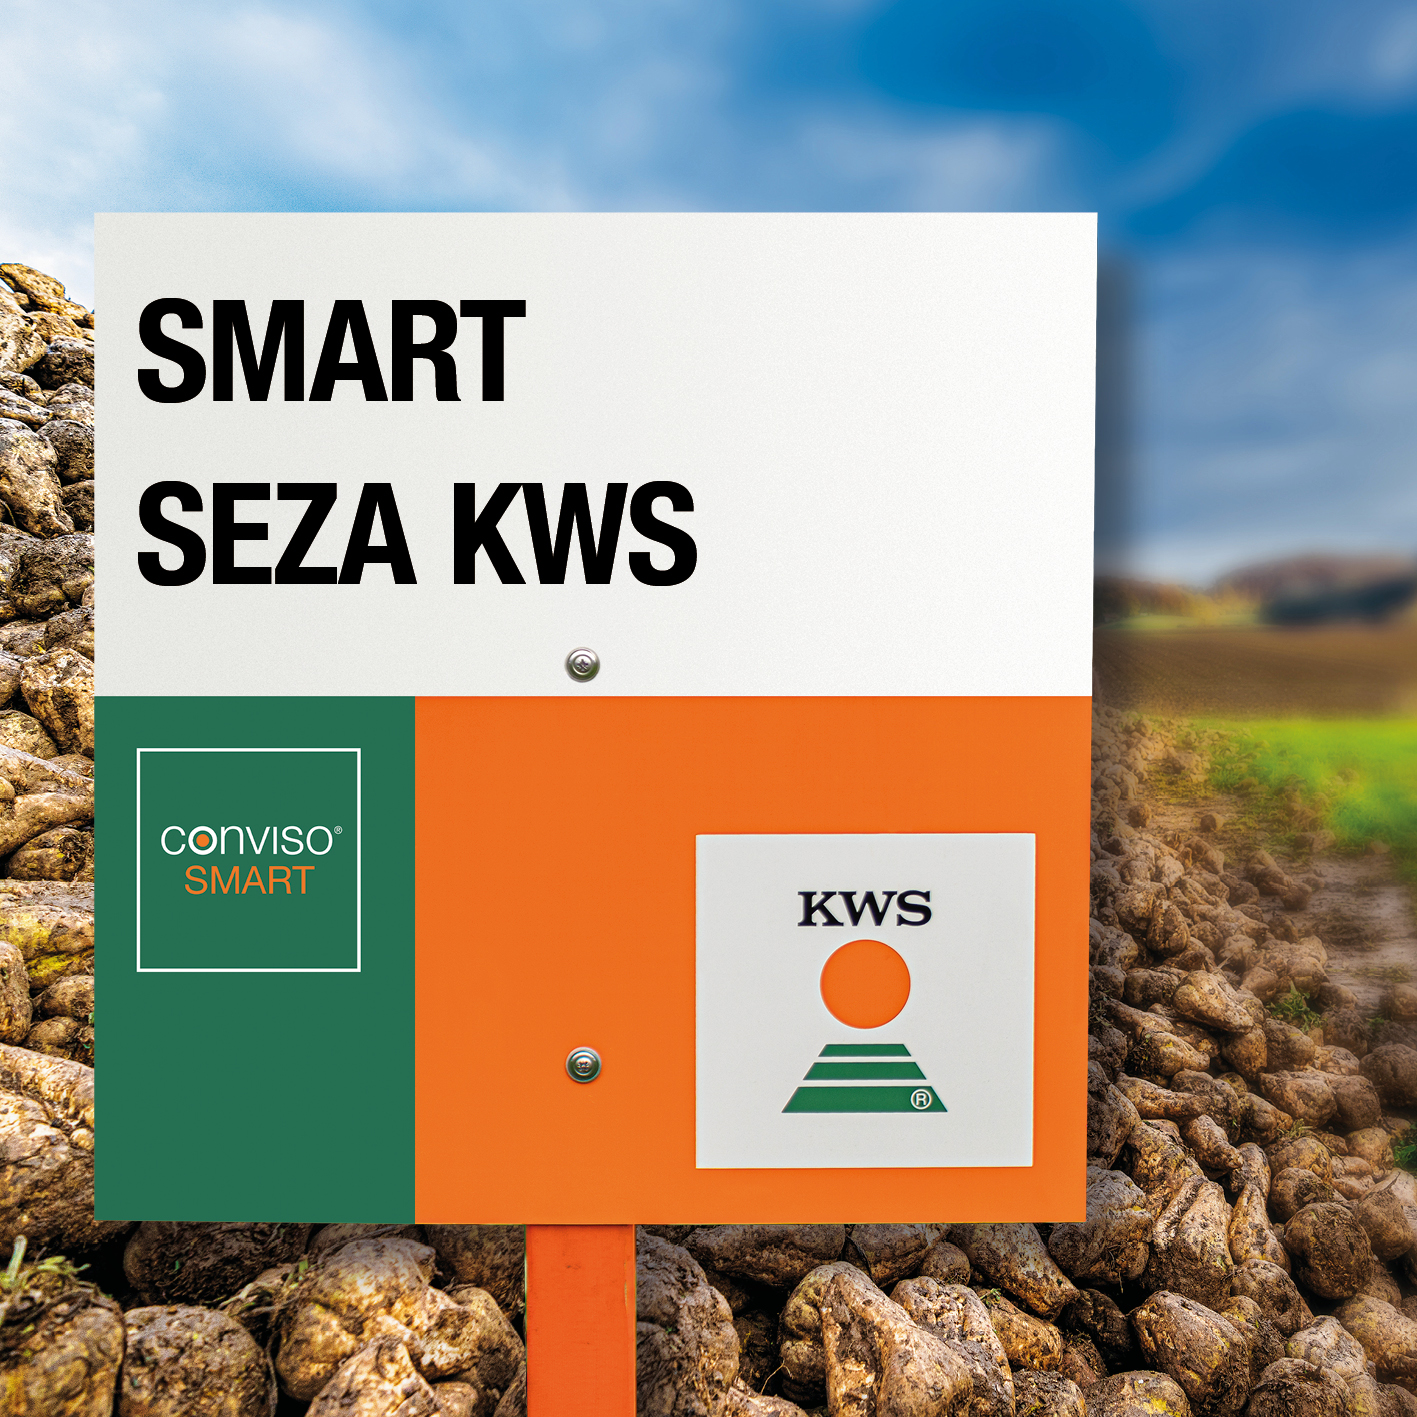 SMART-SEZA-KWS-MD.jpg